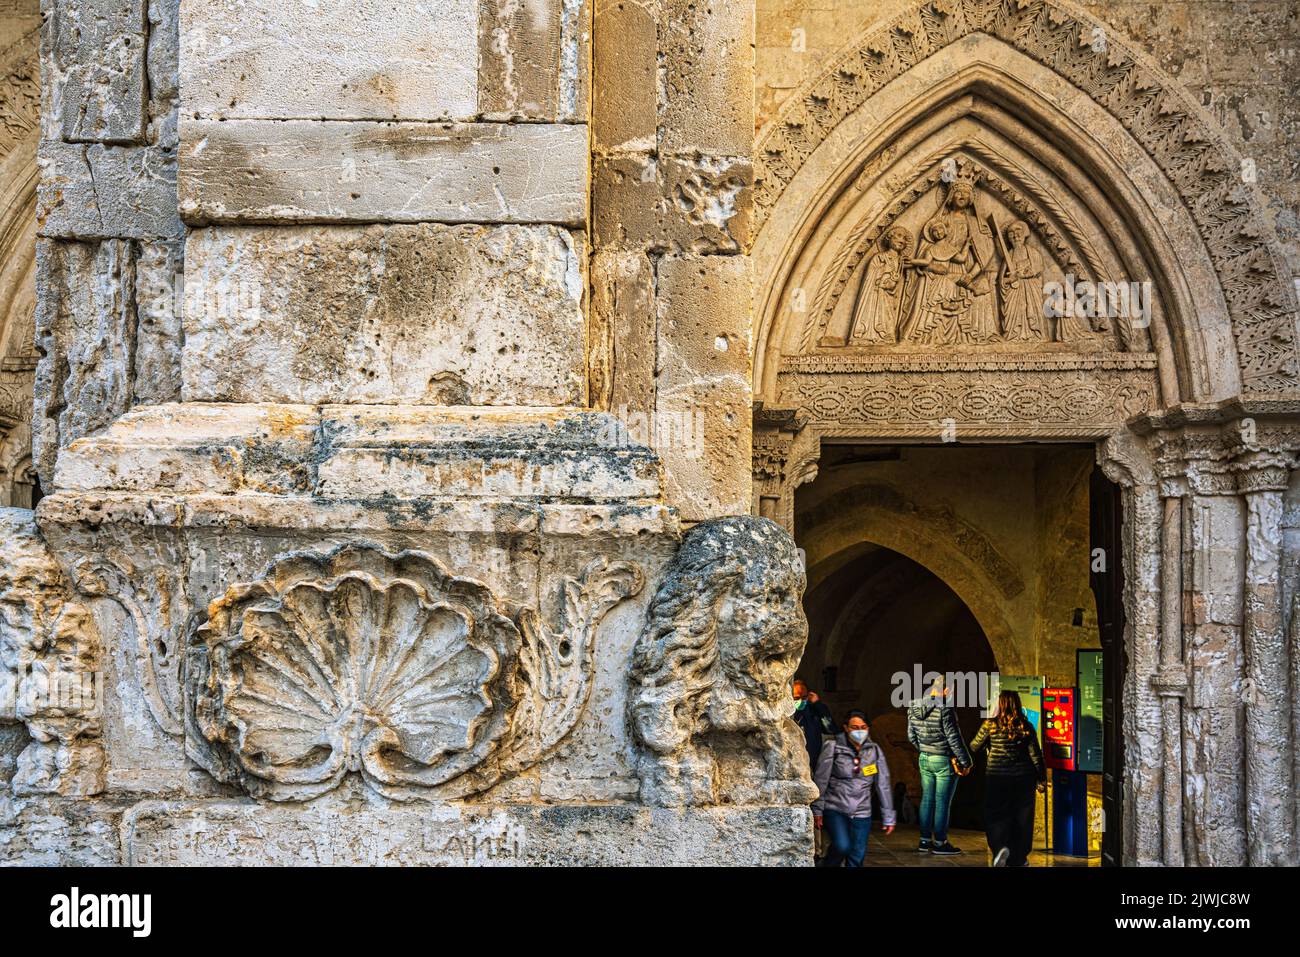 Detalles arquitectónicos de la entrada al santuario de San Michele Arcangelo en el Monte Sant'Angelo. Provincia de Foggia, Apulia, Italia, Europa Foto de stock